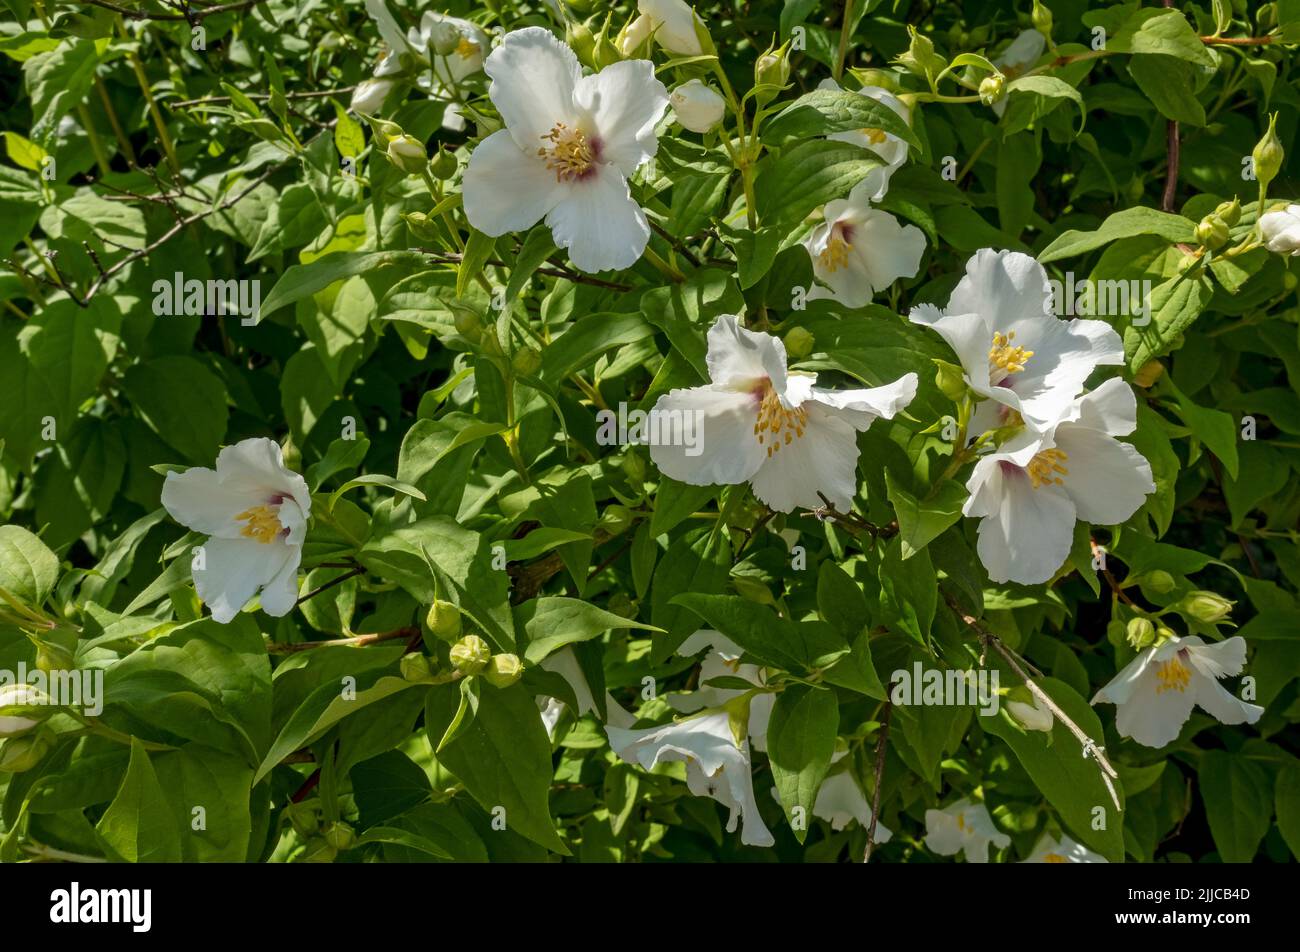 Primo piano di philadelphus coronarius mock arancione Hydrangeaceae bianco fiore fiori in un giardino di confine in estate Inghilterra Gran Bretagna Foto Stock